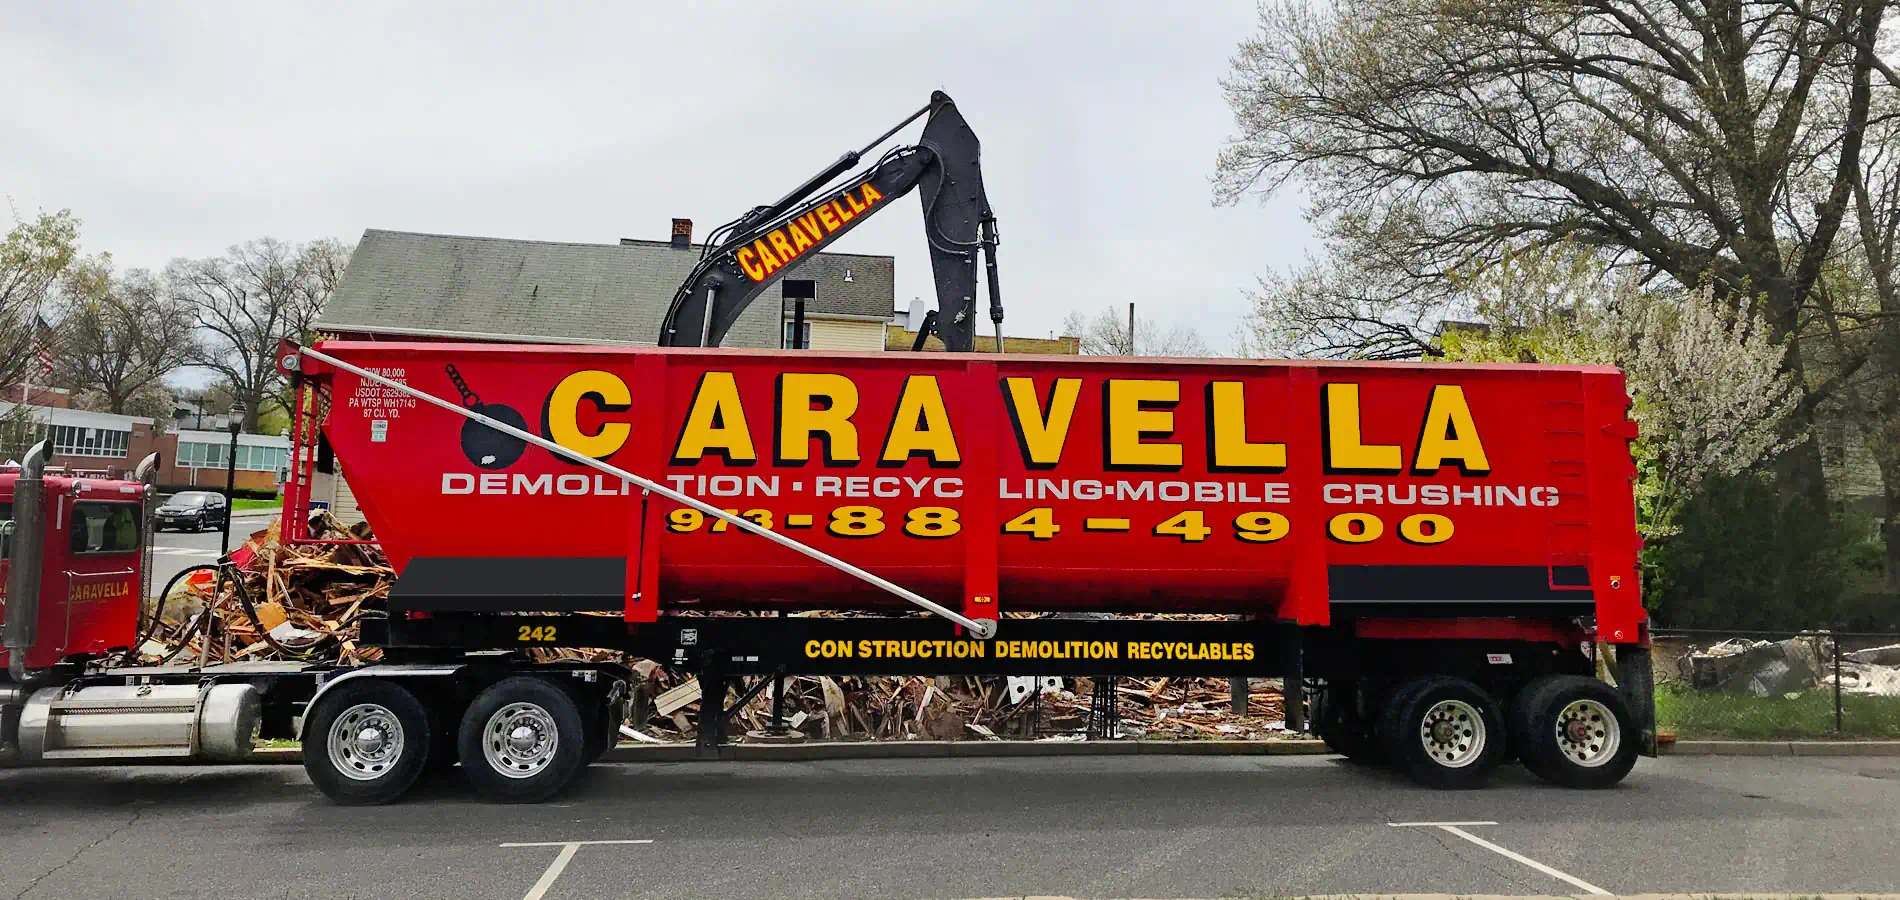 Demolition Services in Perth Amboy, NJ 08861 | Caravella Demolition